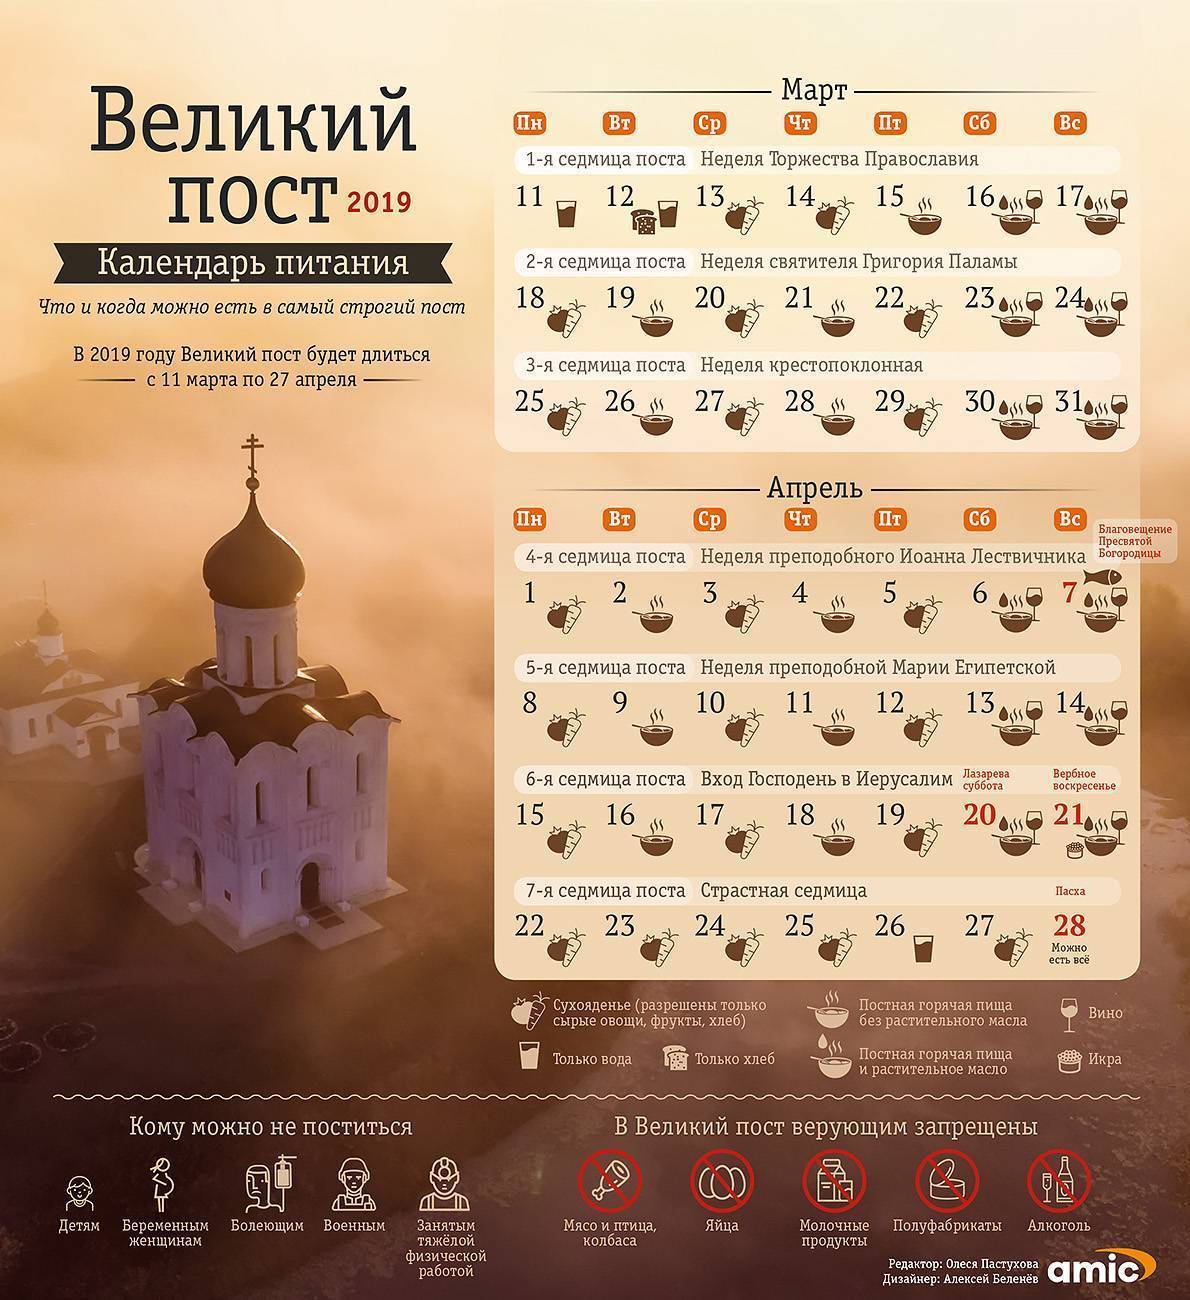 Самый полный церковный православный календарь на 2022 год, все праздники, посты и поминальные дни